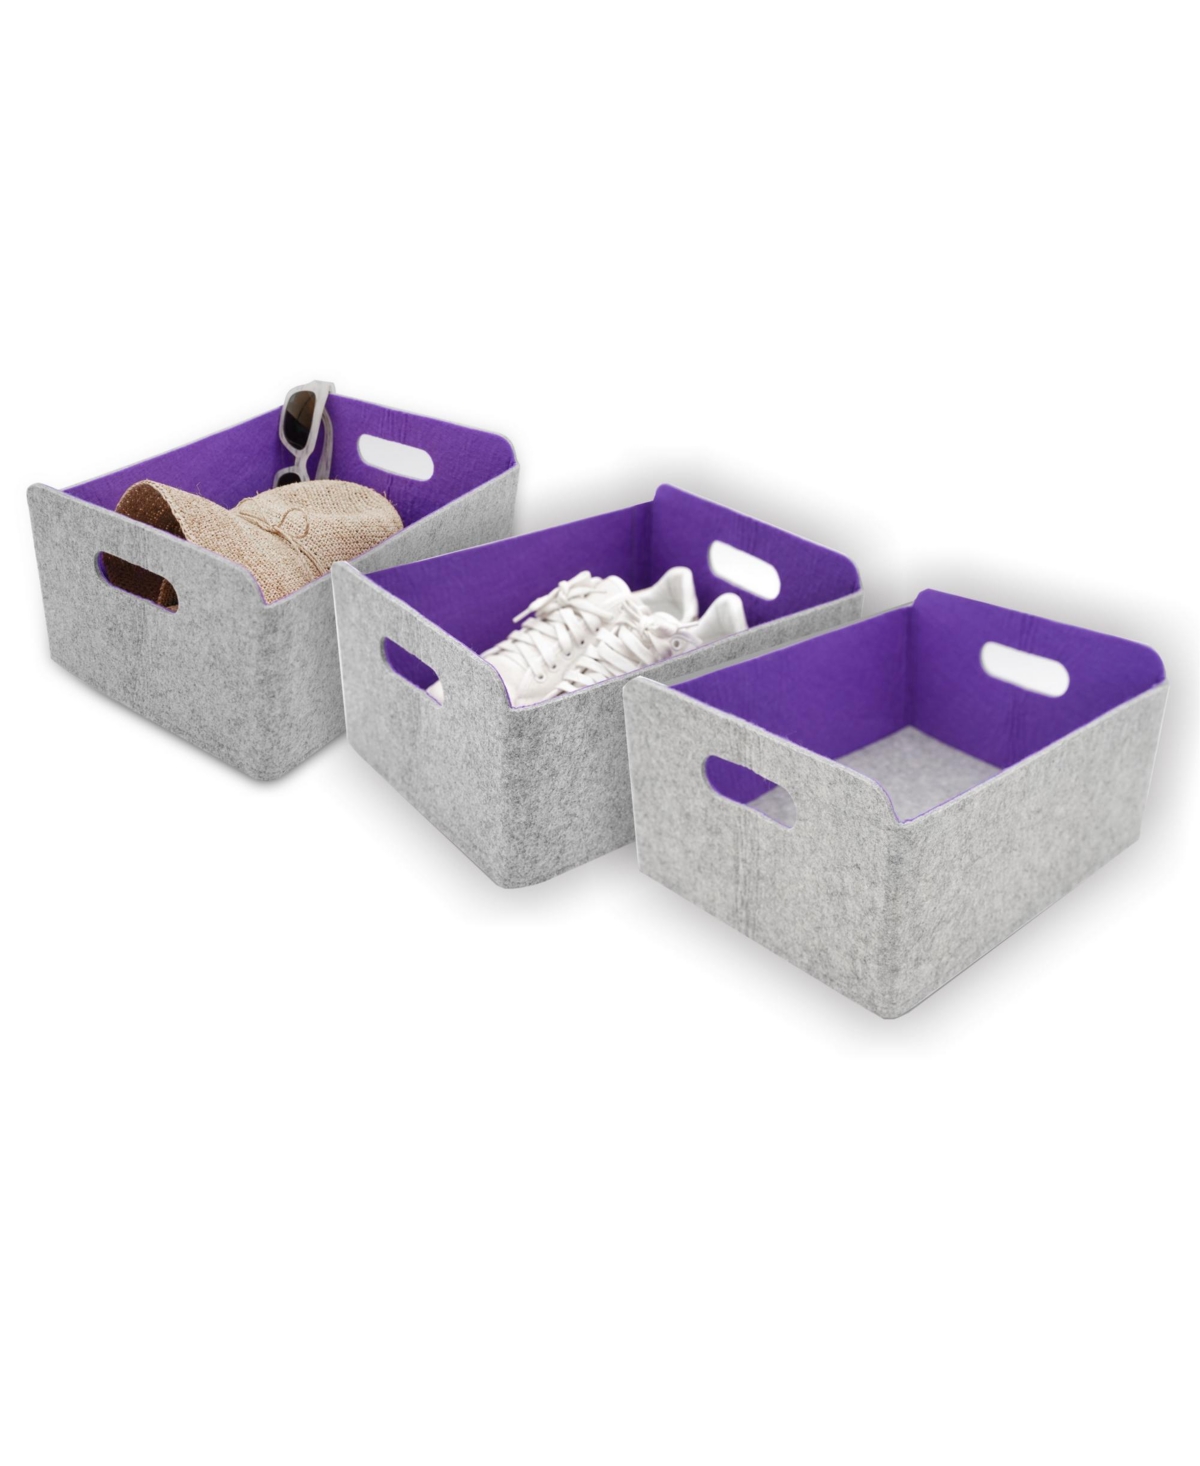 Felt 3 Piece Collapsible Storage Bin Set - Purple